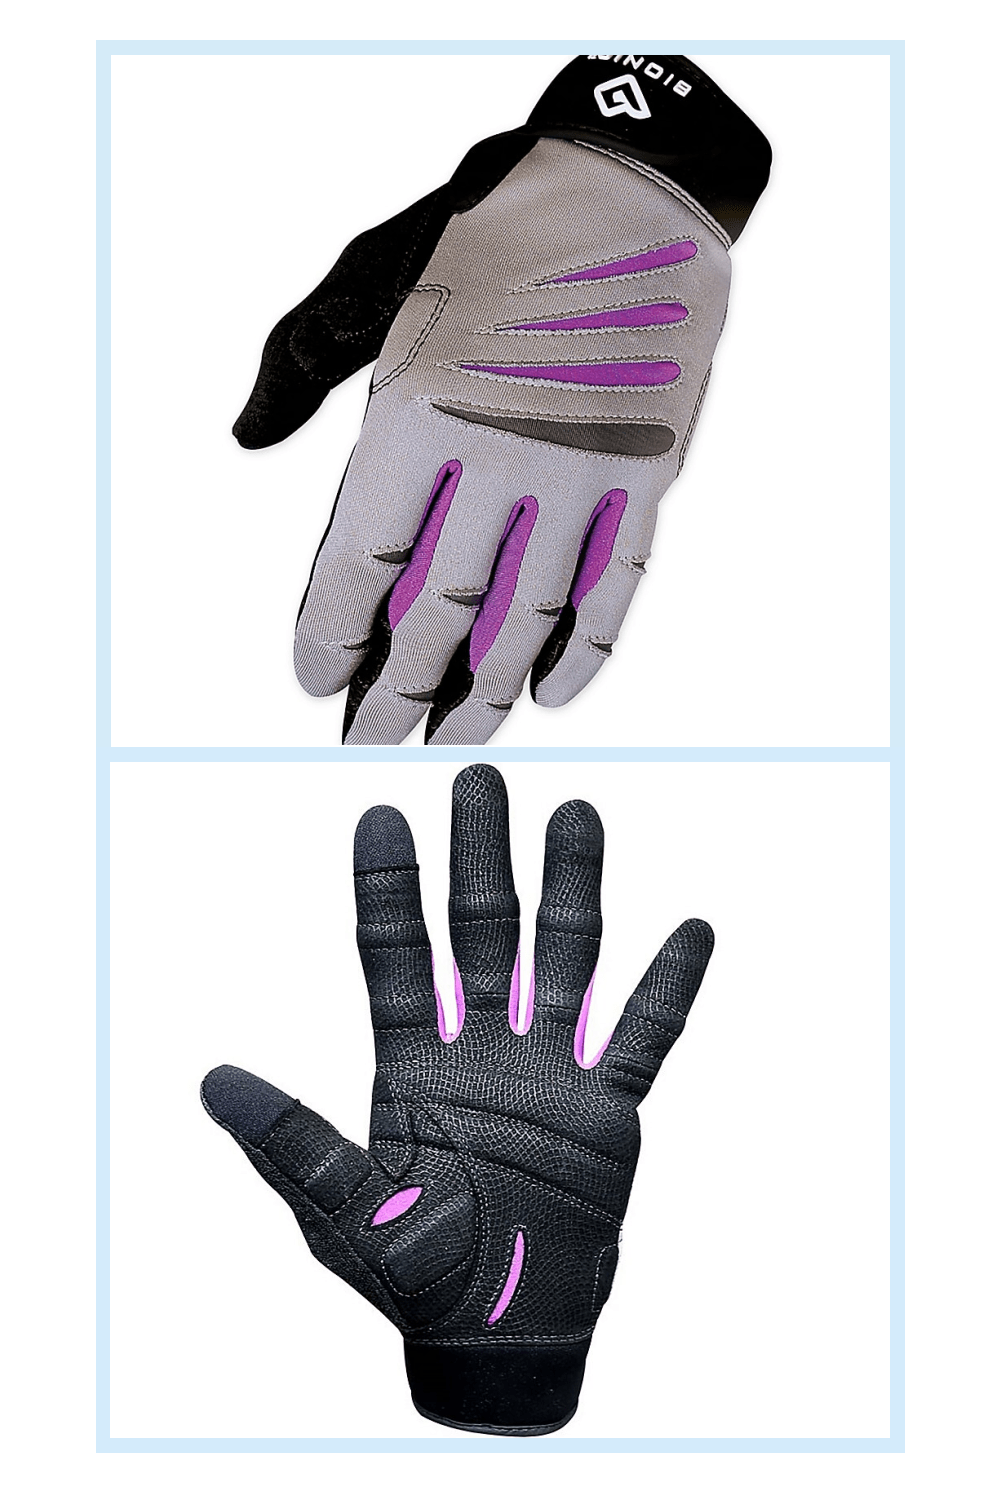 Bionic Gloves Full-Finger Women's Large Cross-Training Fitness Gloves Grey/purple - Bionic Gloves Full-Finger Women's Large Cross-Training Fitness Gloves Grey/purple -   18 cross fitness Body ideas